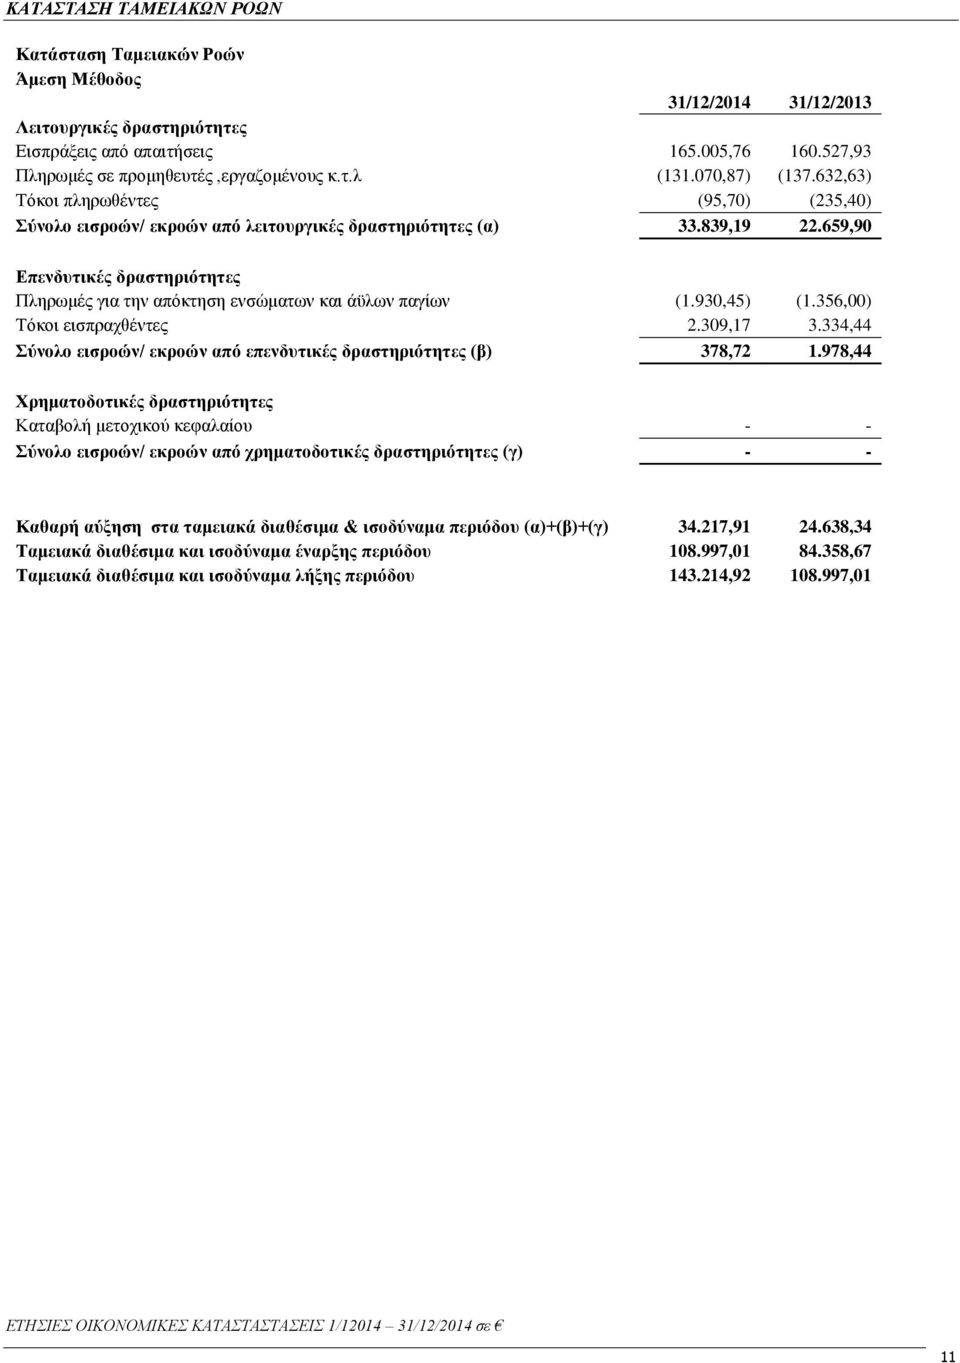 659,90 Επενδυτικές δραστηριότητες Πληρωμές για την απόκτηση ενσώματων και άϋλων παγίων (1.930,45) (1.356,00) Τόκοι εισπραχθέντες 2.309,17 3.